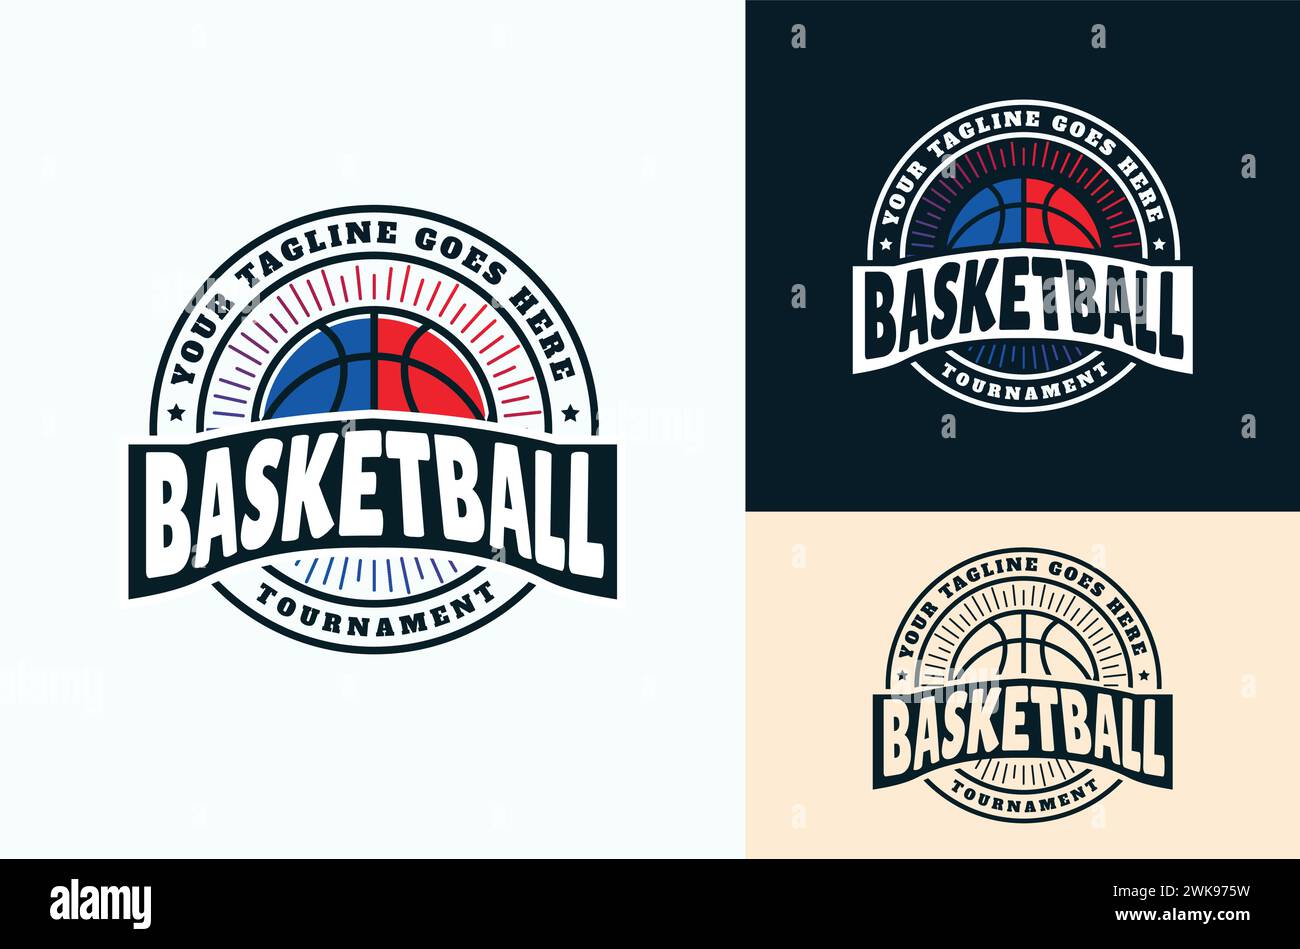 American Sport Basketball Vintage Retro Club Emblem. Basketball mit roten und blauen Reflexen, Turnier, Designvorlage Stock Vektor